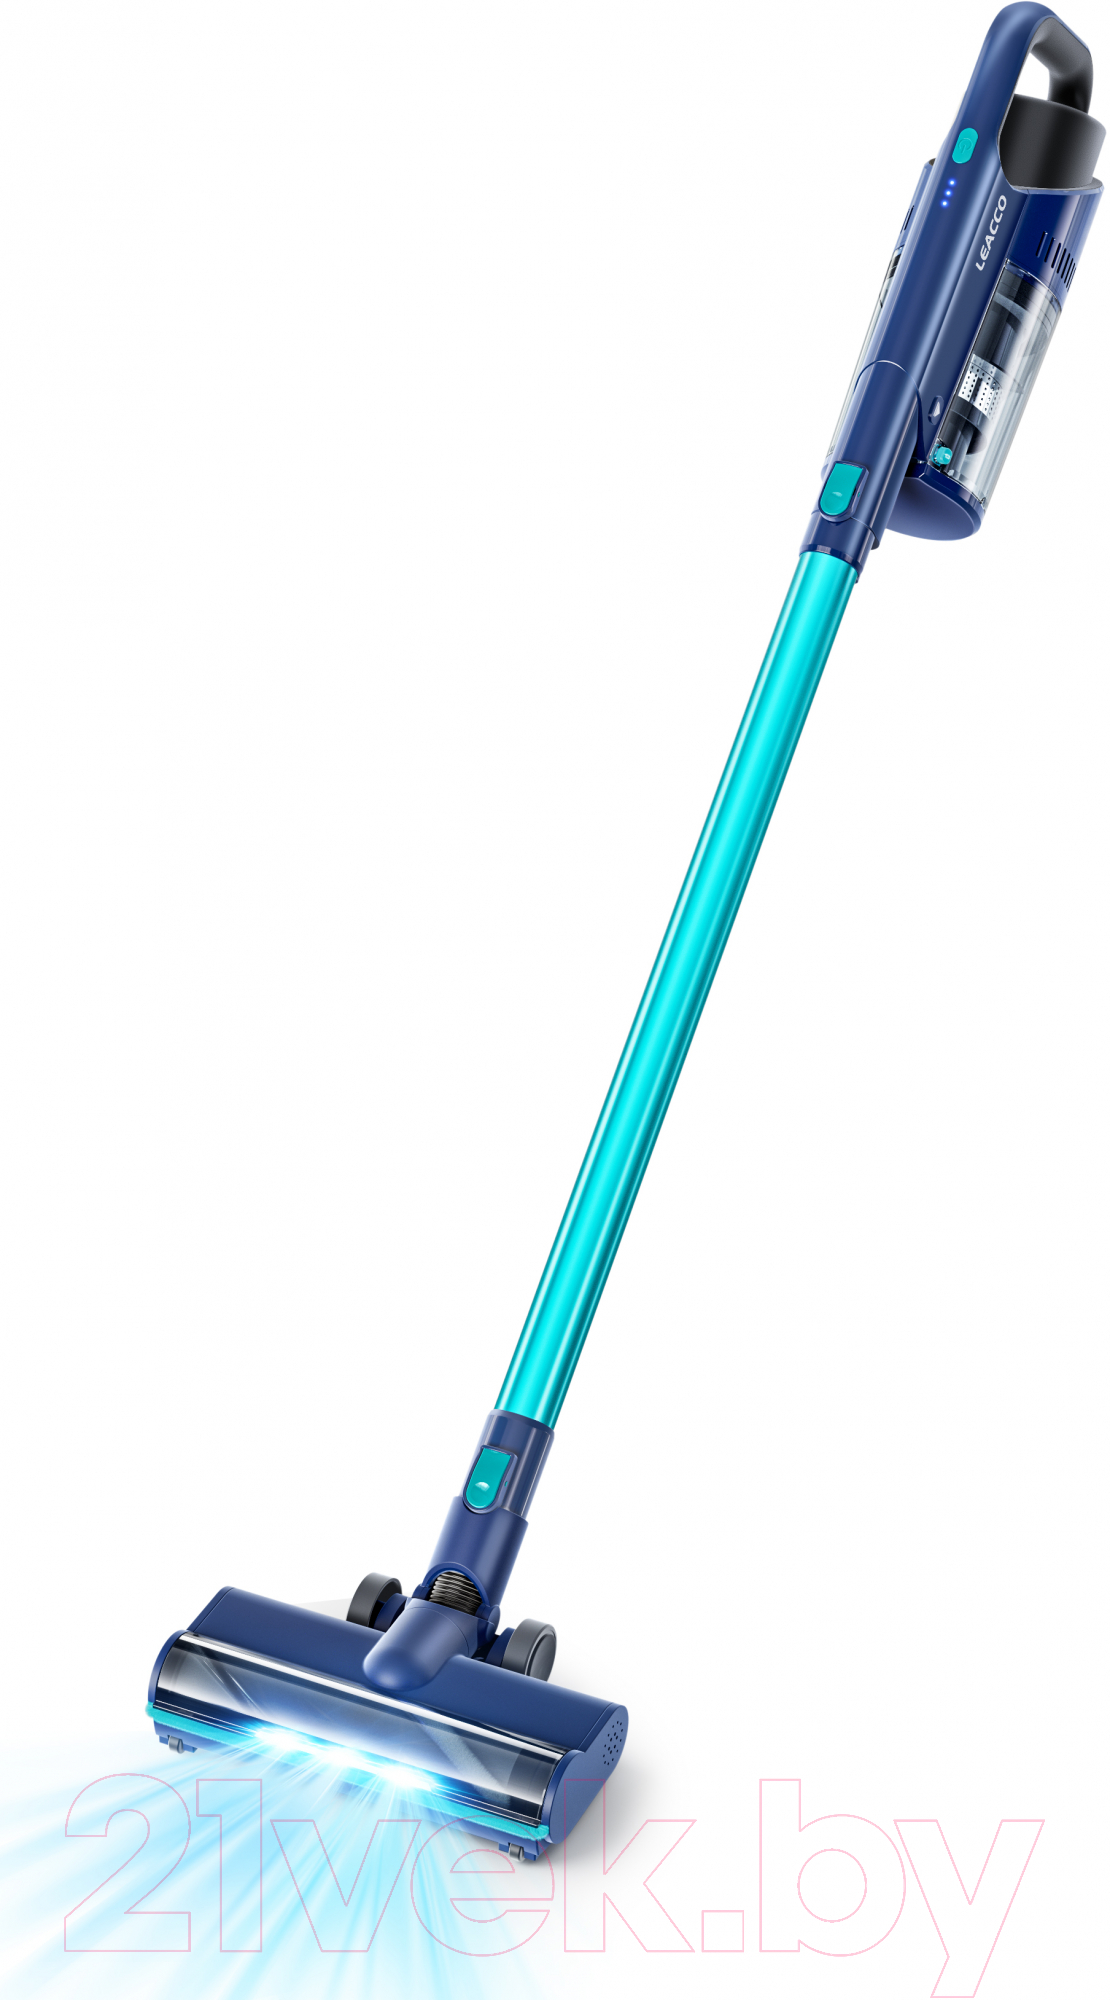 Вертикальный пылесос Leacco Cordless Vacuum Cleaner S31